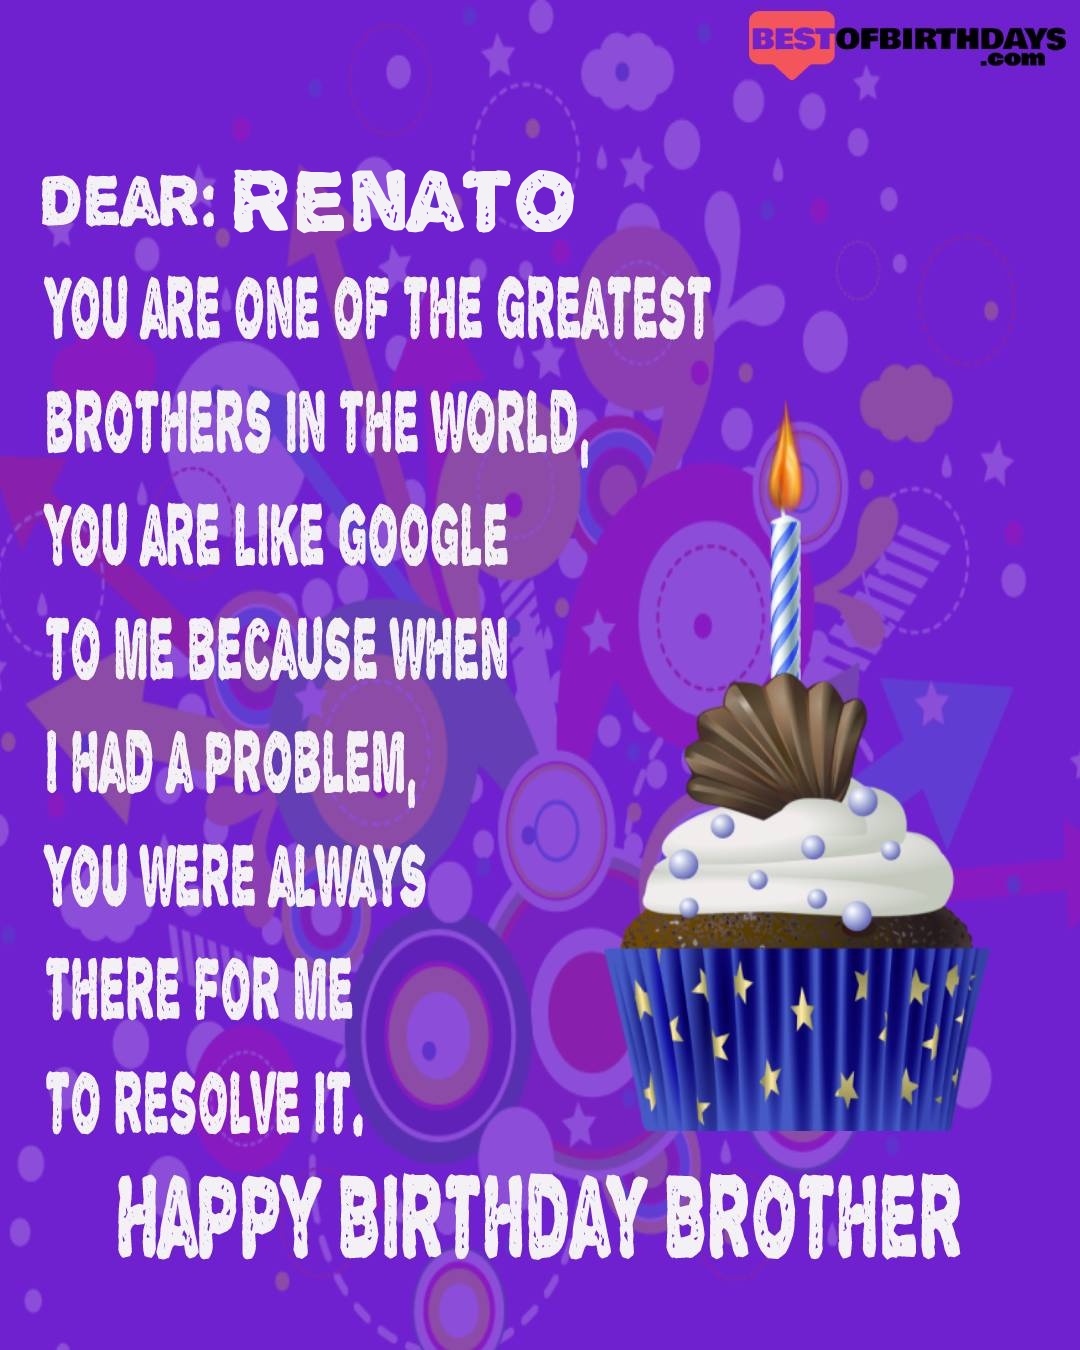 Happy birthday renato bhai brother bro